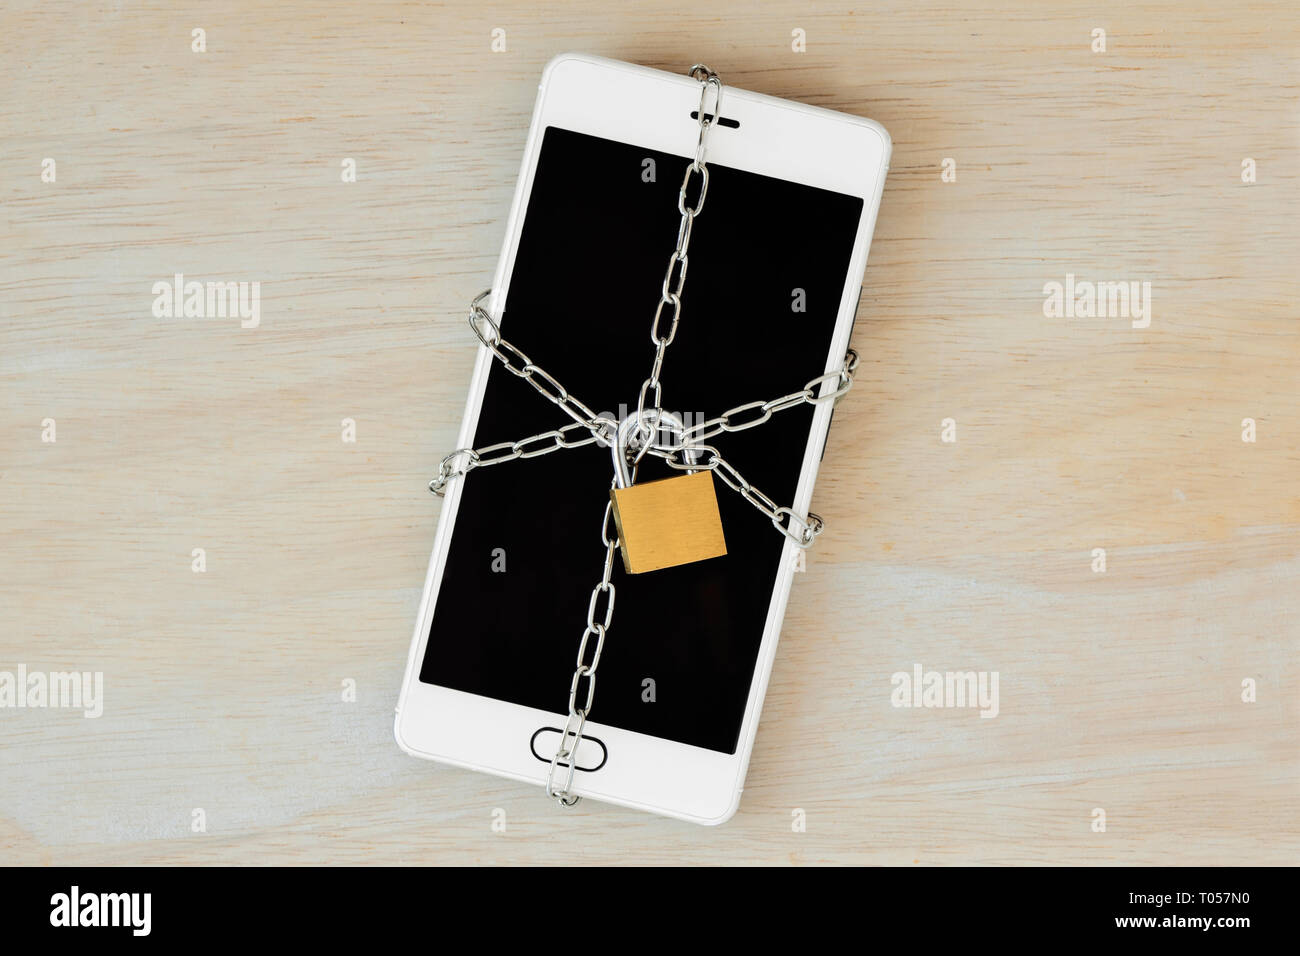 Verrouillage du Smartphone avec chaîne et cadenas - Concept de sécurité et de confidentialité des données mobiles Banque D'Images